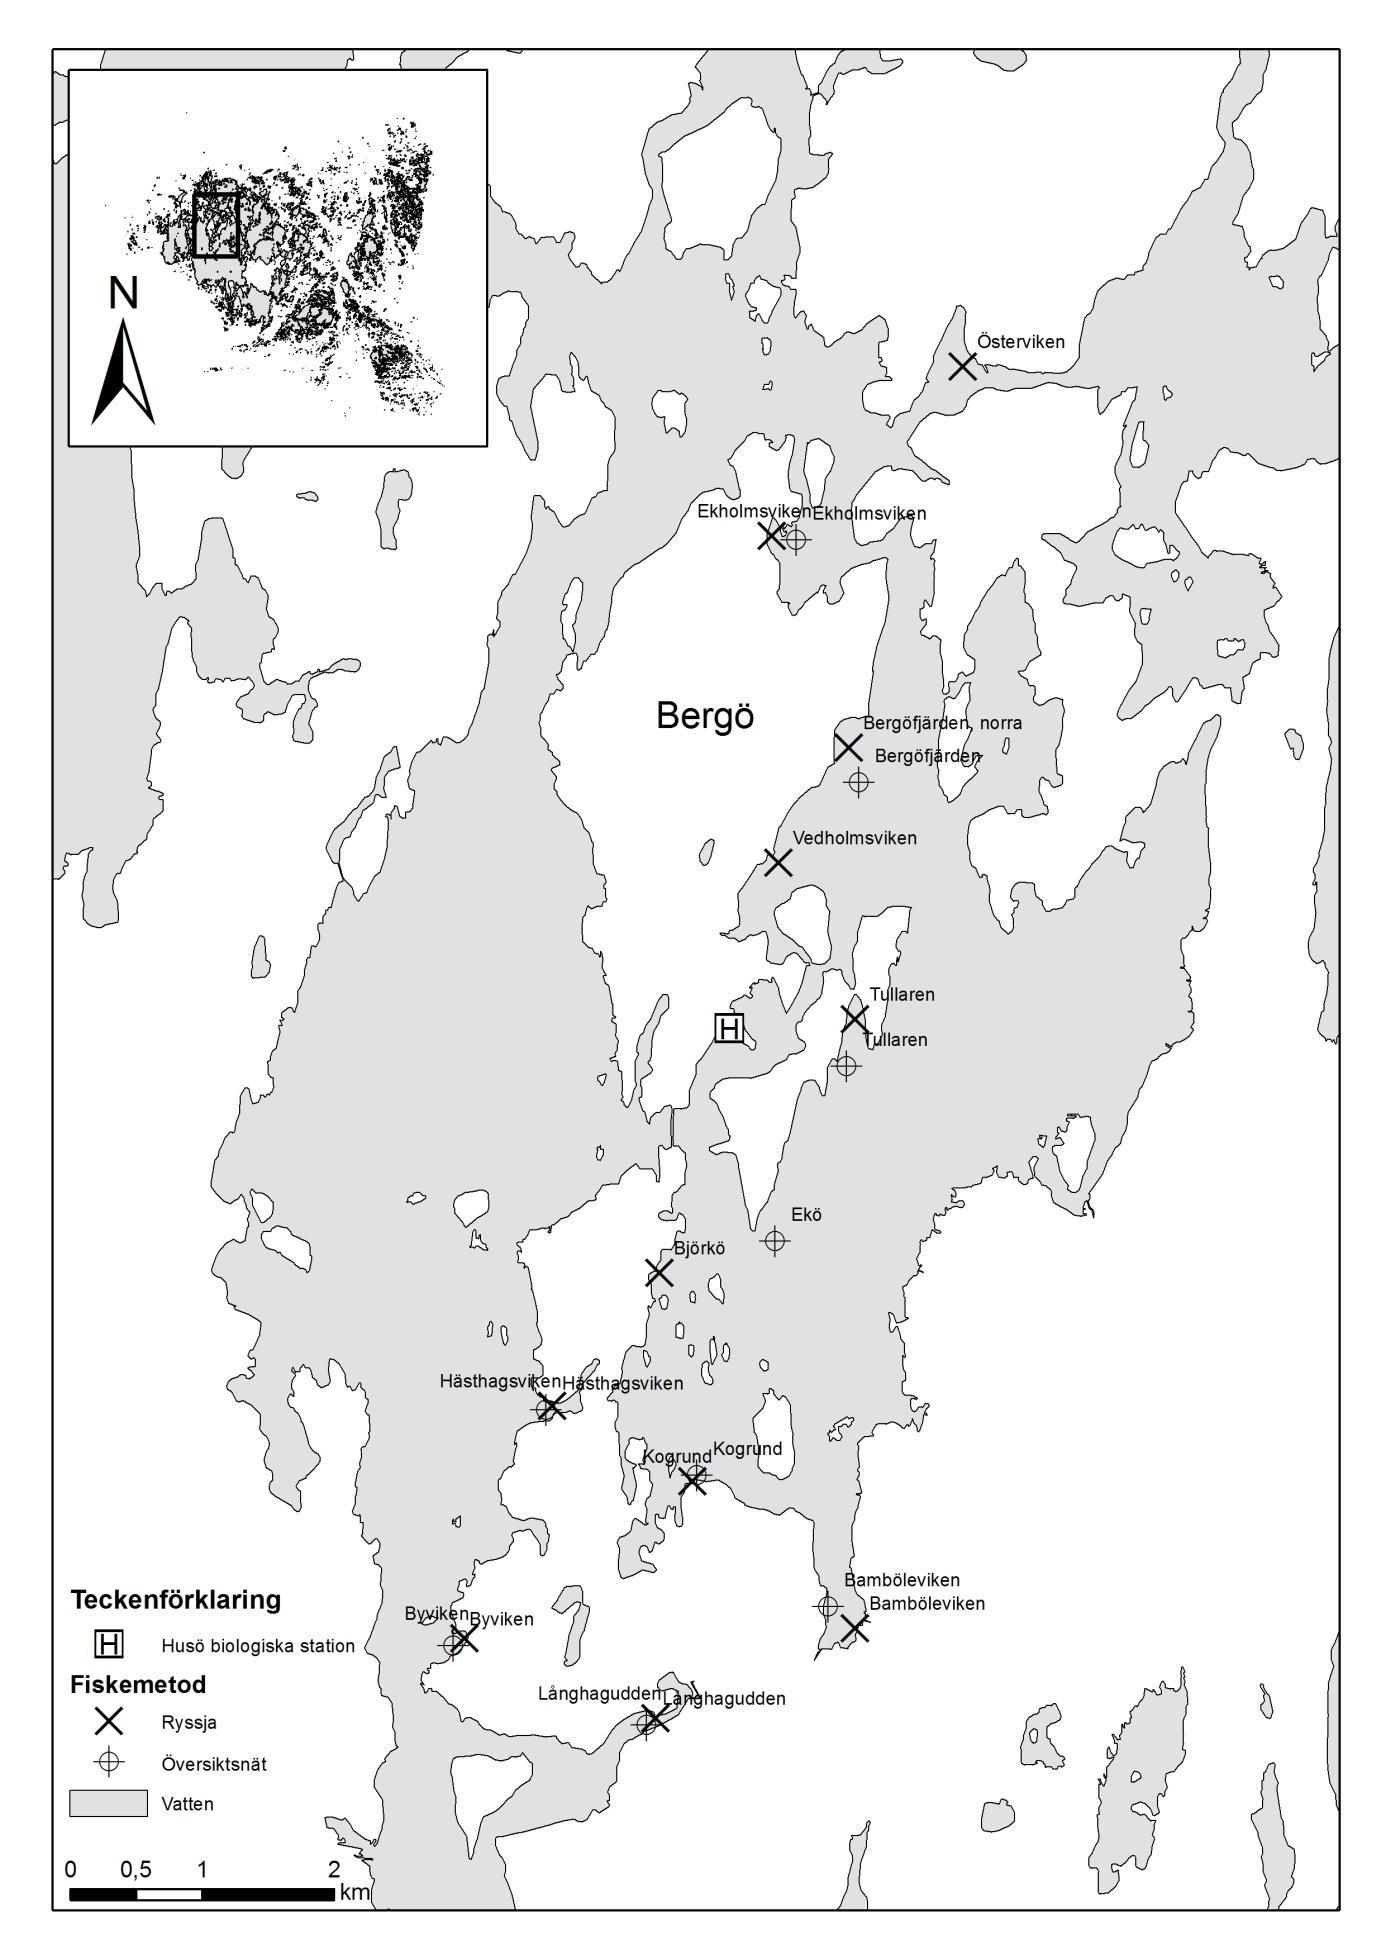 4 Figur 2. Fiskeområdet runt Bergö, Finström. Kartan illustrerar placeringen av ryssjorna och näten.